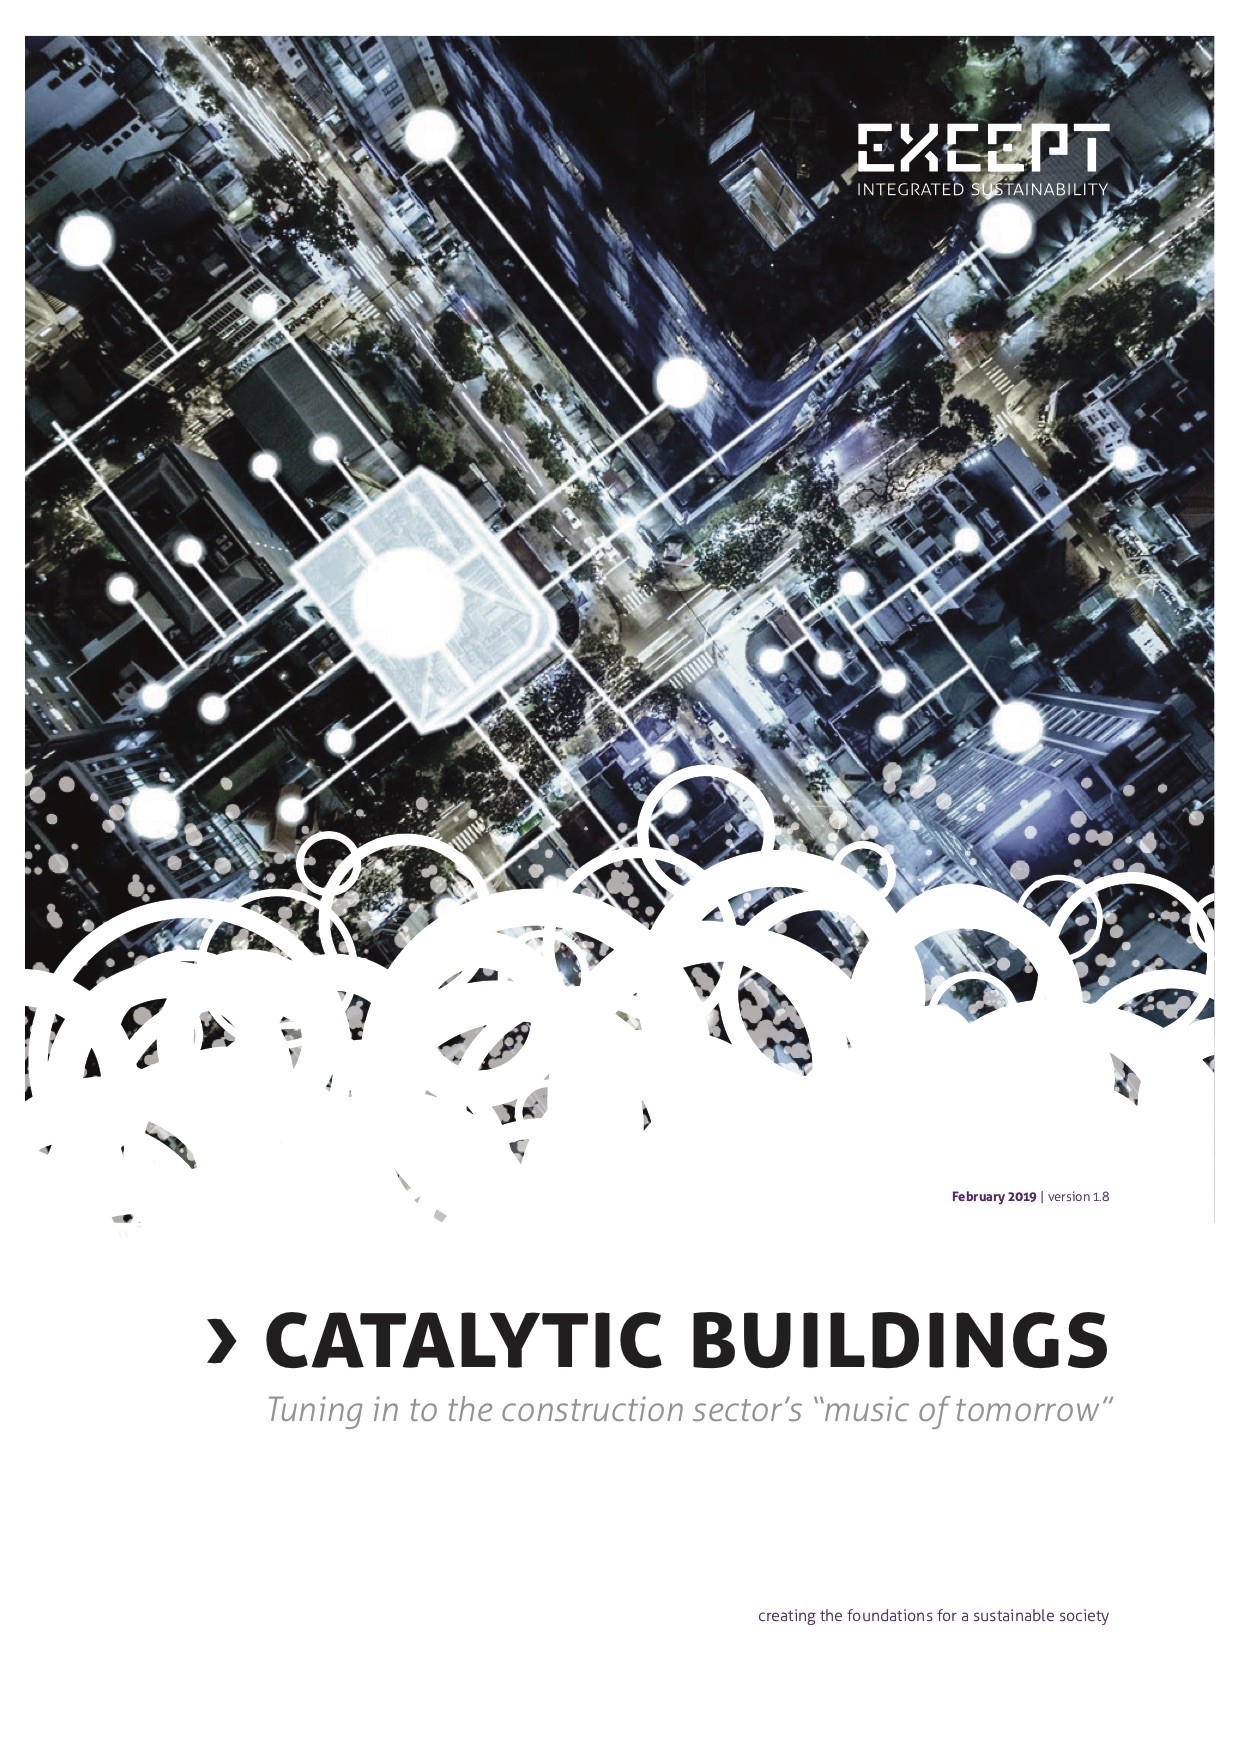 Except_Catalytic_Buildings_Whitepaper.jpg